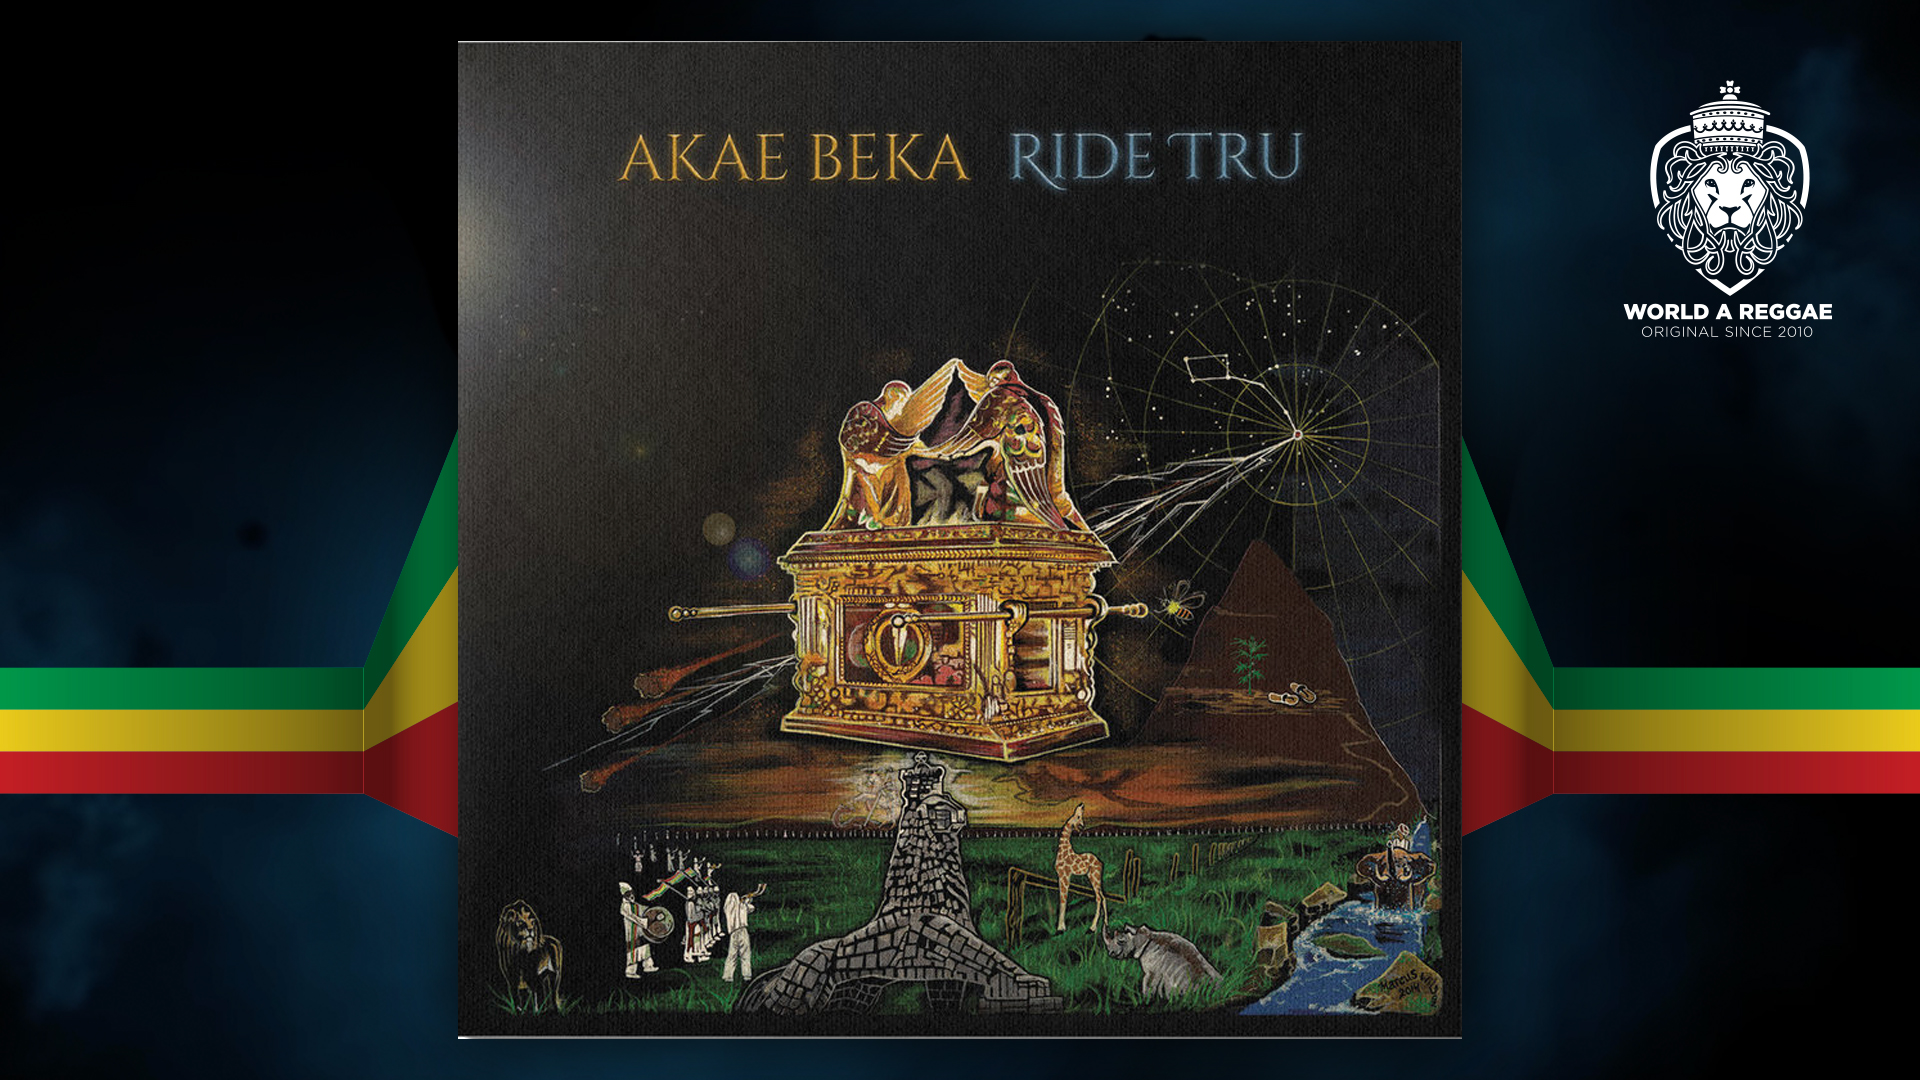 Ride Tru Akae beka